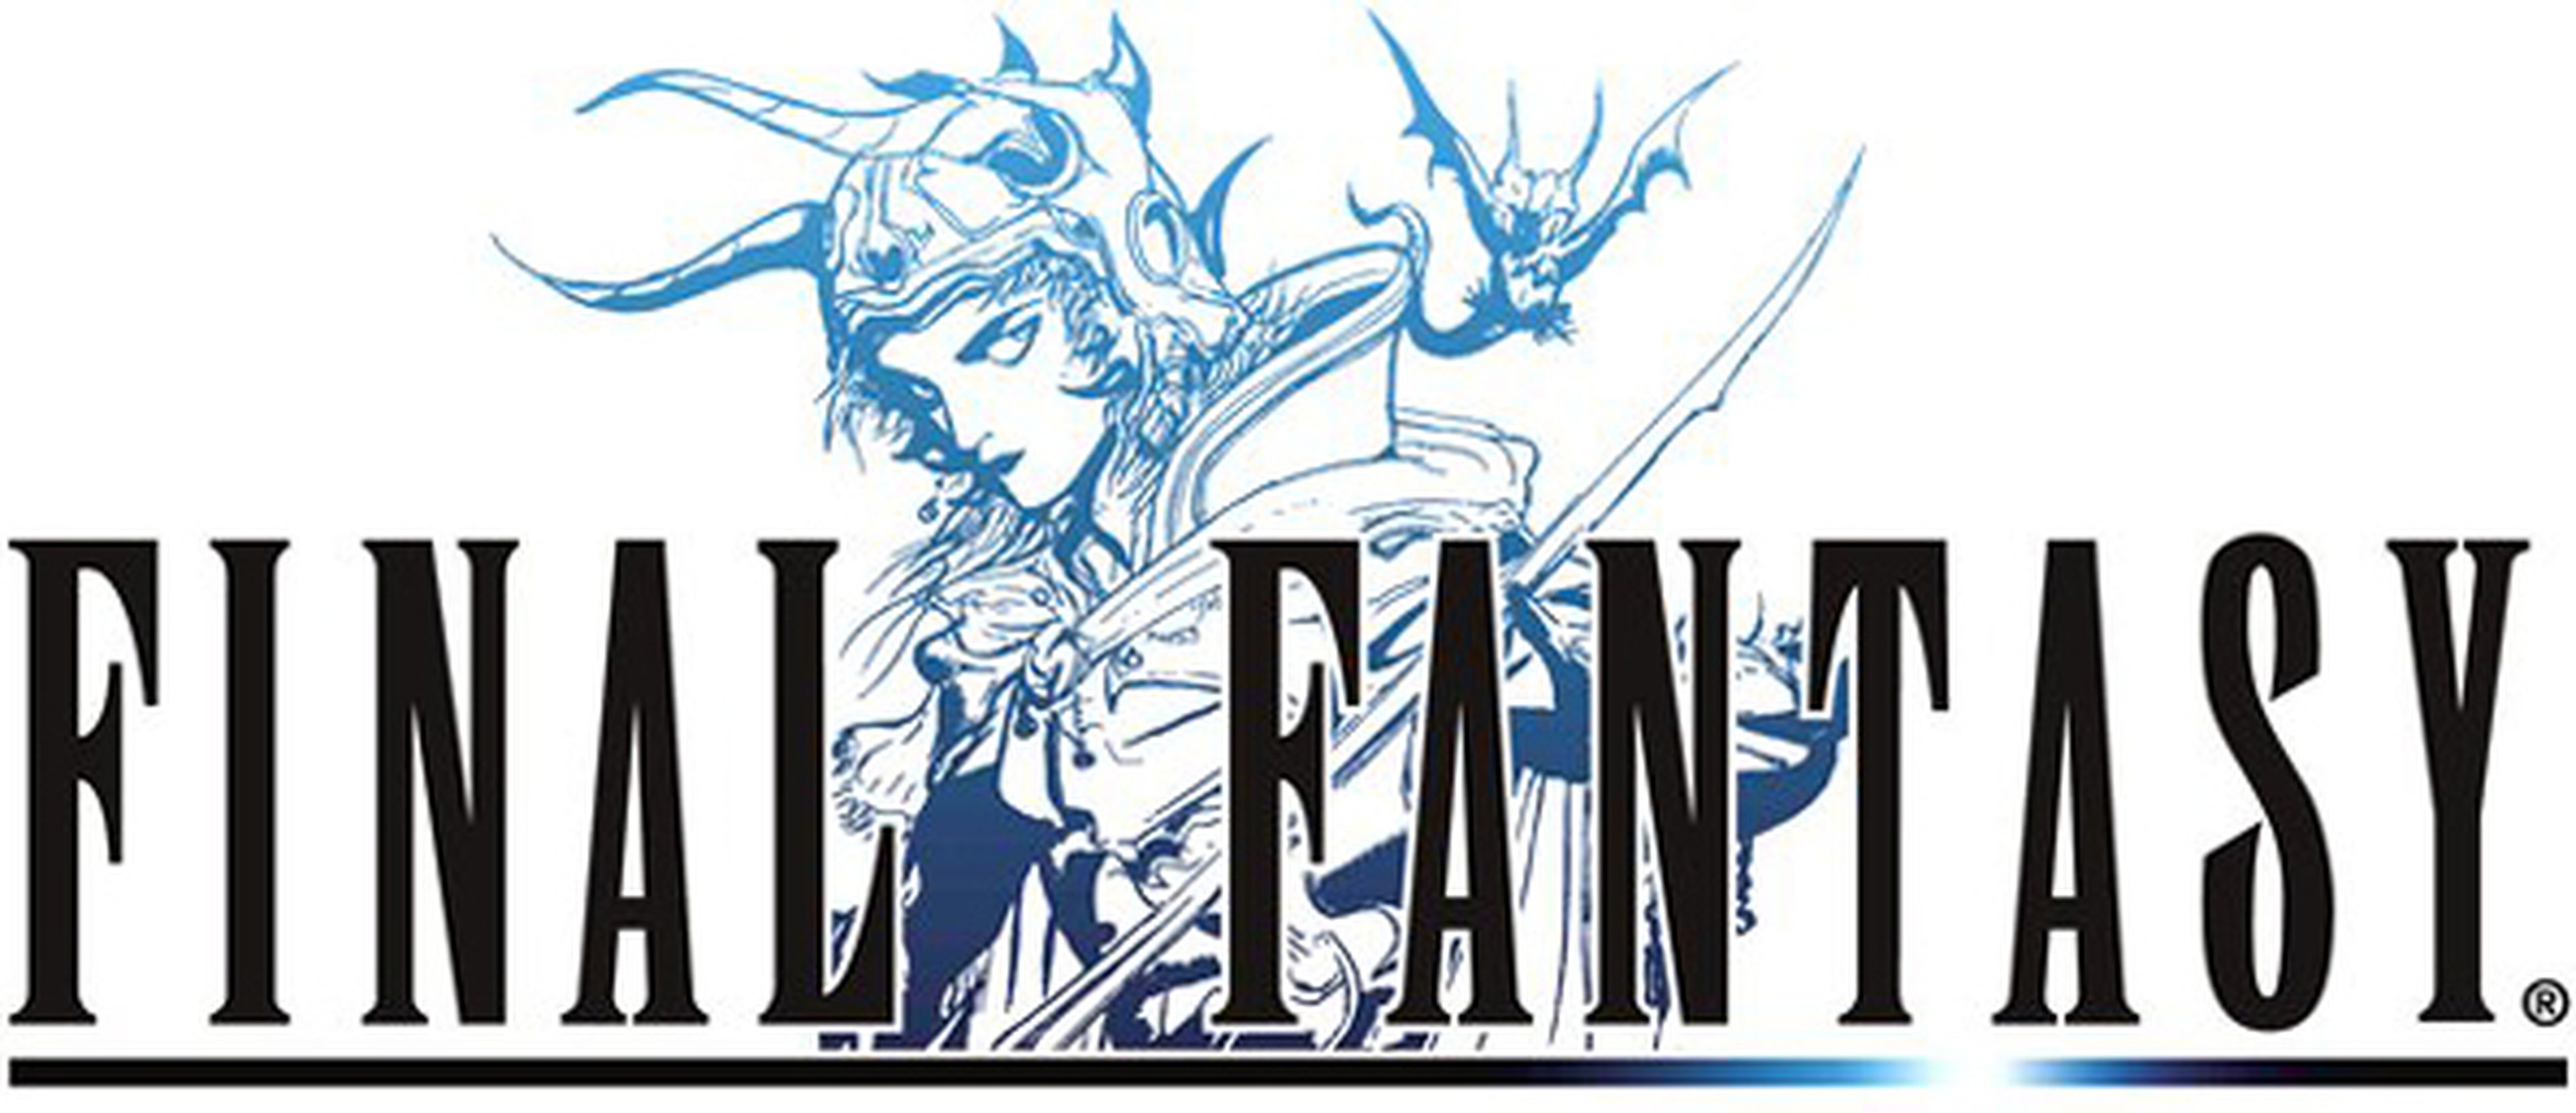 Final Fantasy se estrena en Android